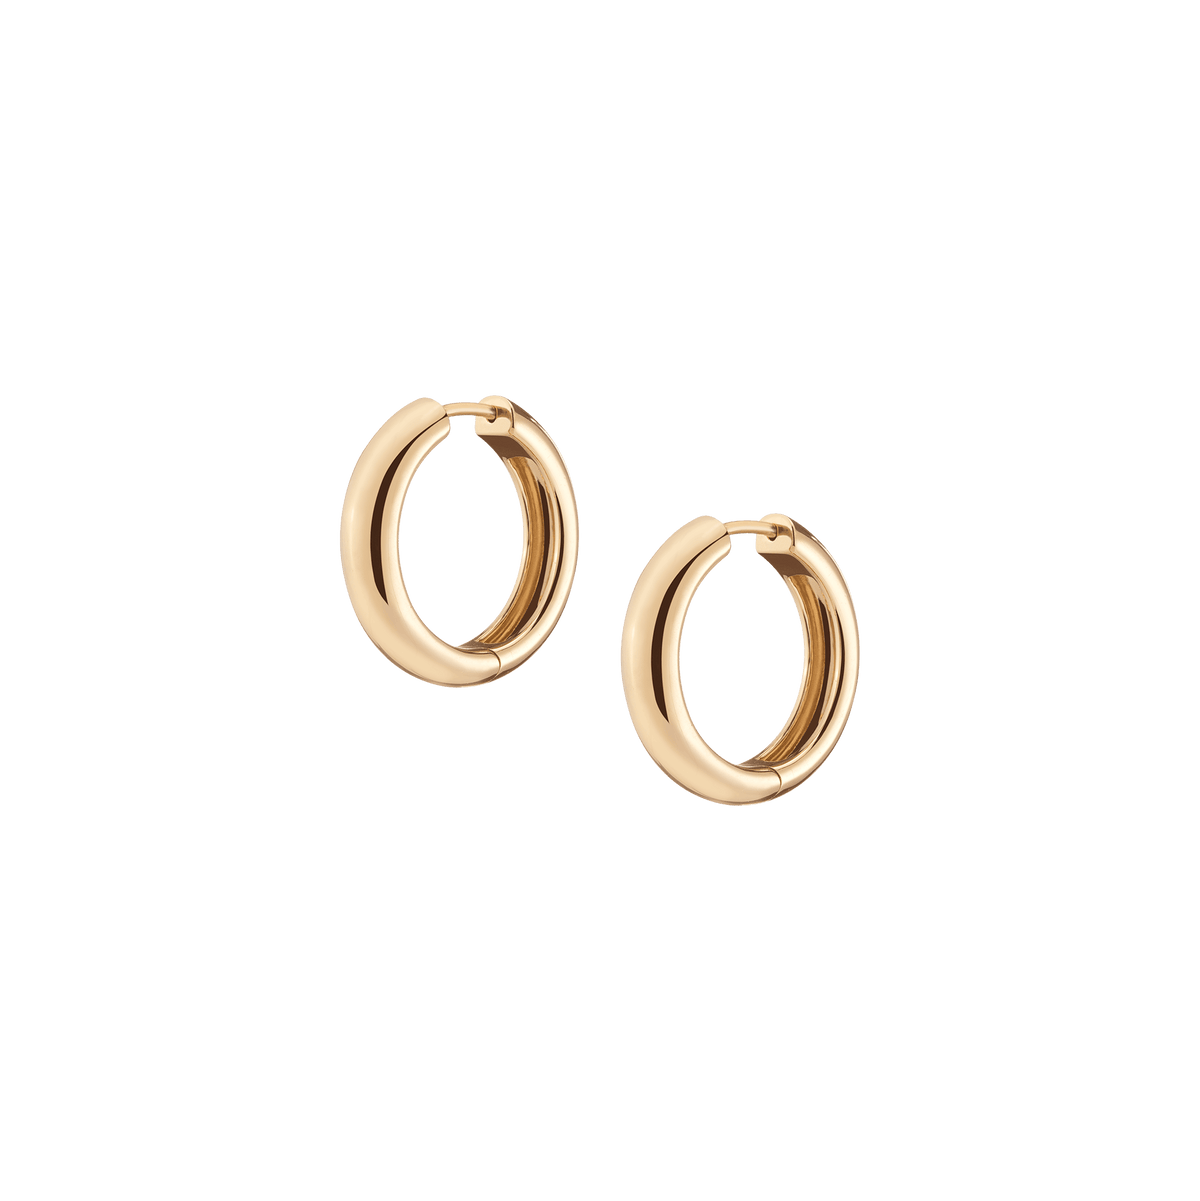 Small Gold Hoop Earrings Gold Huggie Earrings Small Hoop Earrings Silver  Small Hoop Earrings Rose Gold Hoops Earrings Bridesmaid Gift